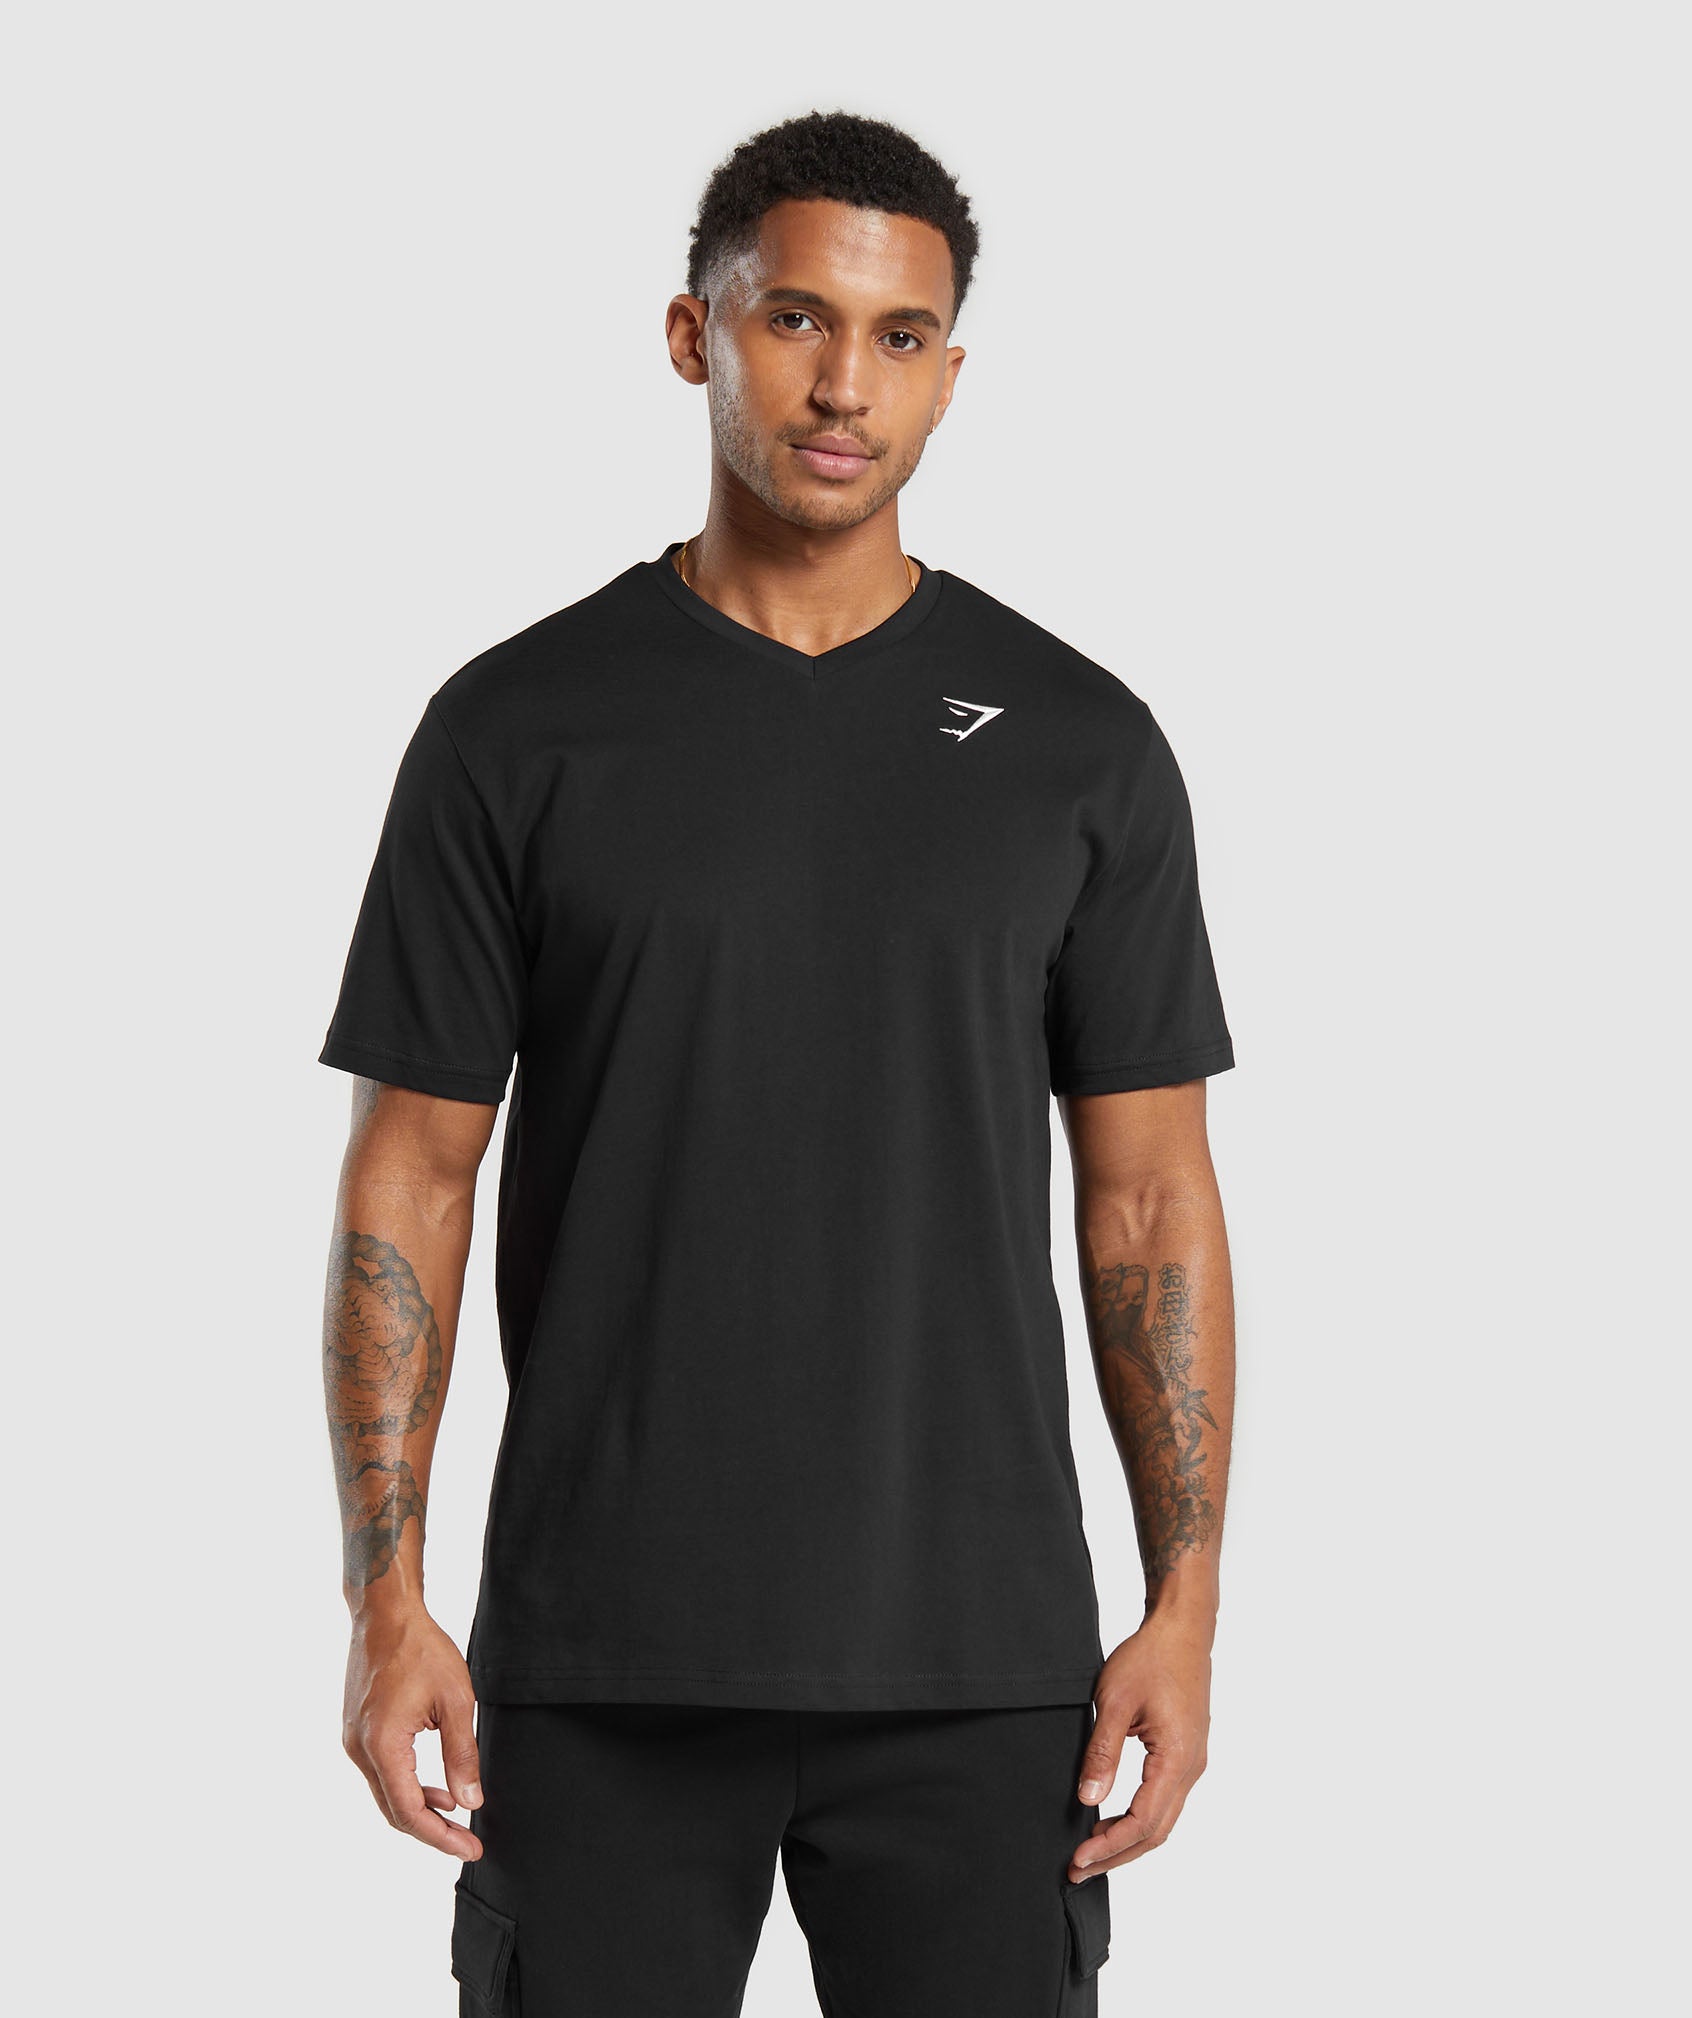 Crest V-Neck T Shirt in Black